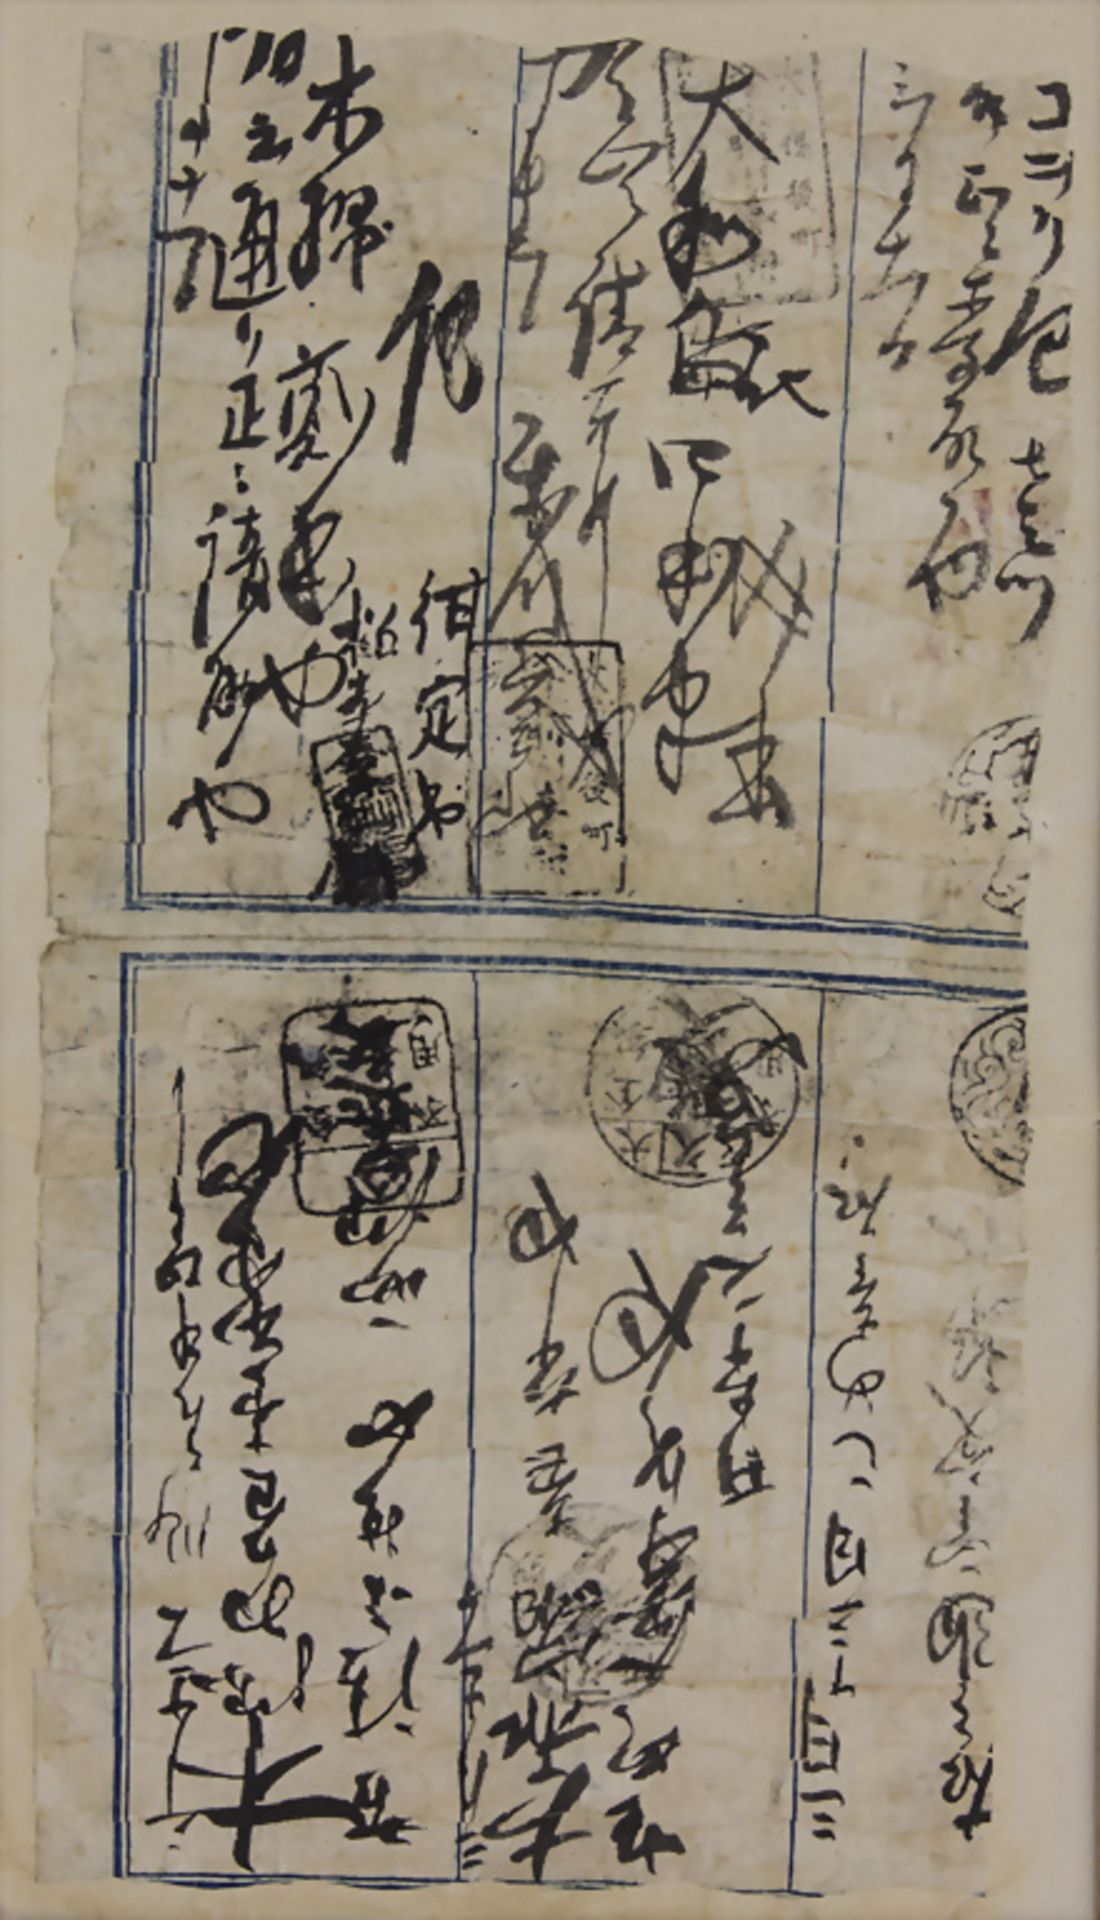 Kalligrafie 'Blatt mit asiatischen Schriftzeichen' / Calligraphy 'A sheet with Asian characters'